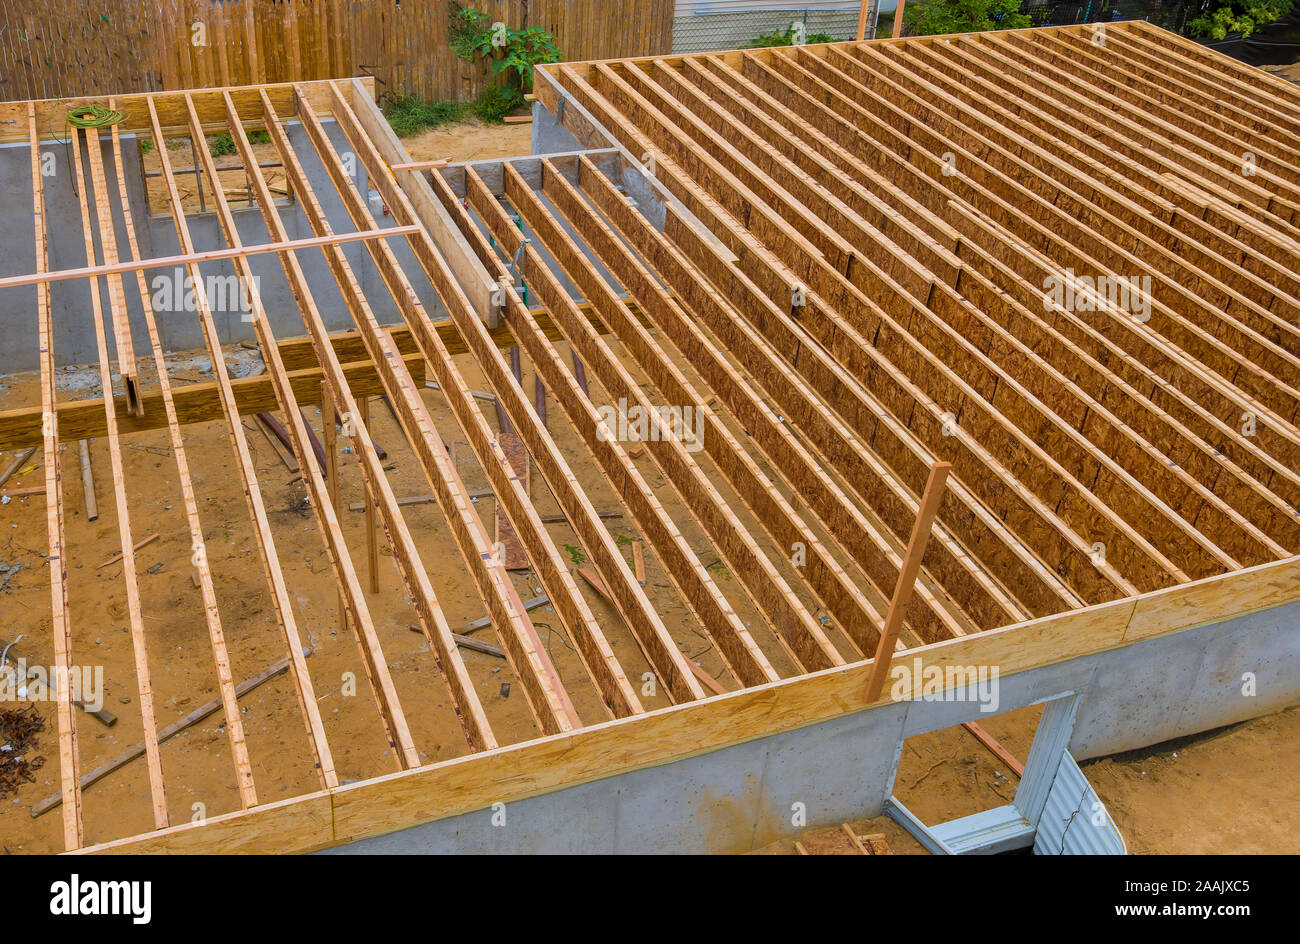 La construction du plancher à ossature en bois massif montrant les solives préfabriquées Banque D'Images